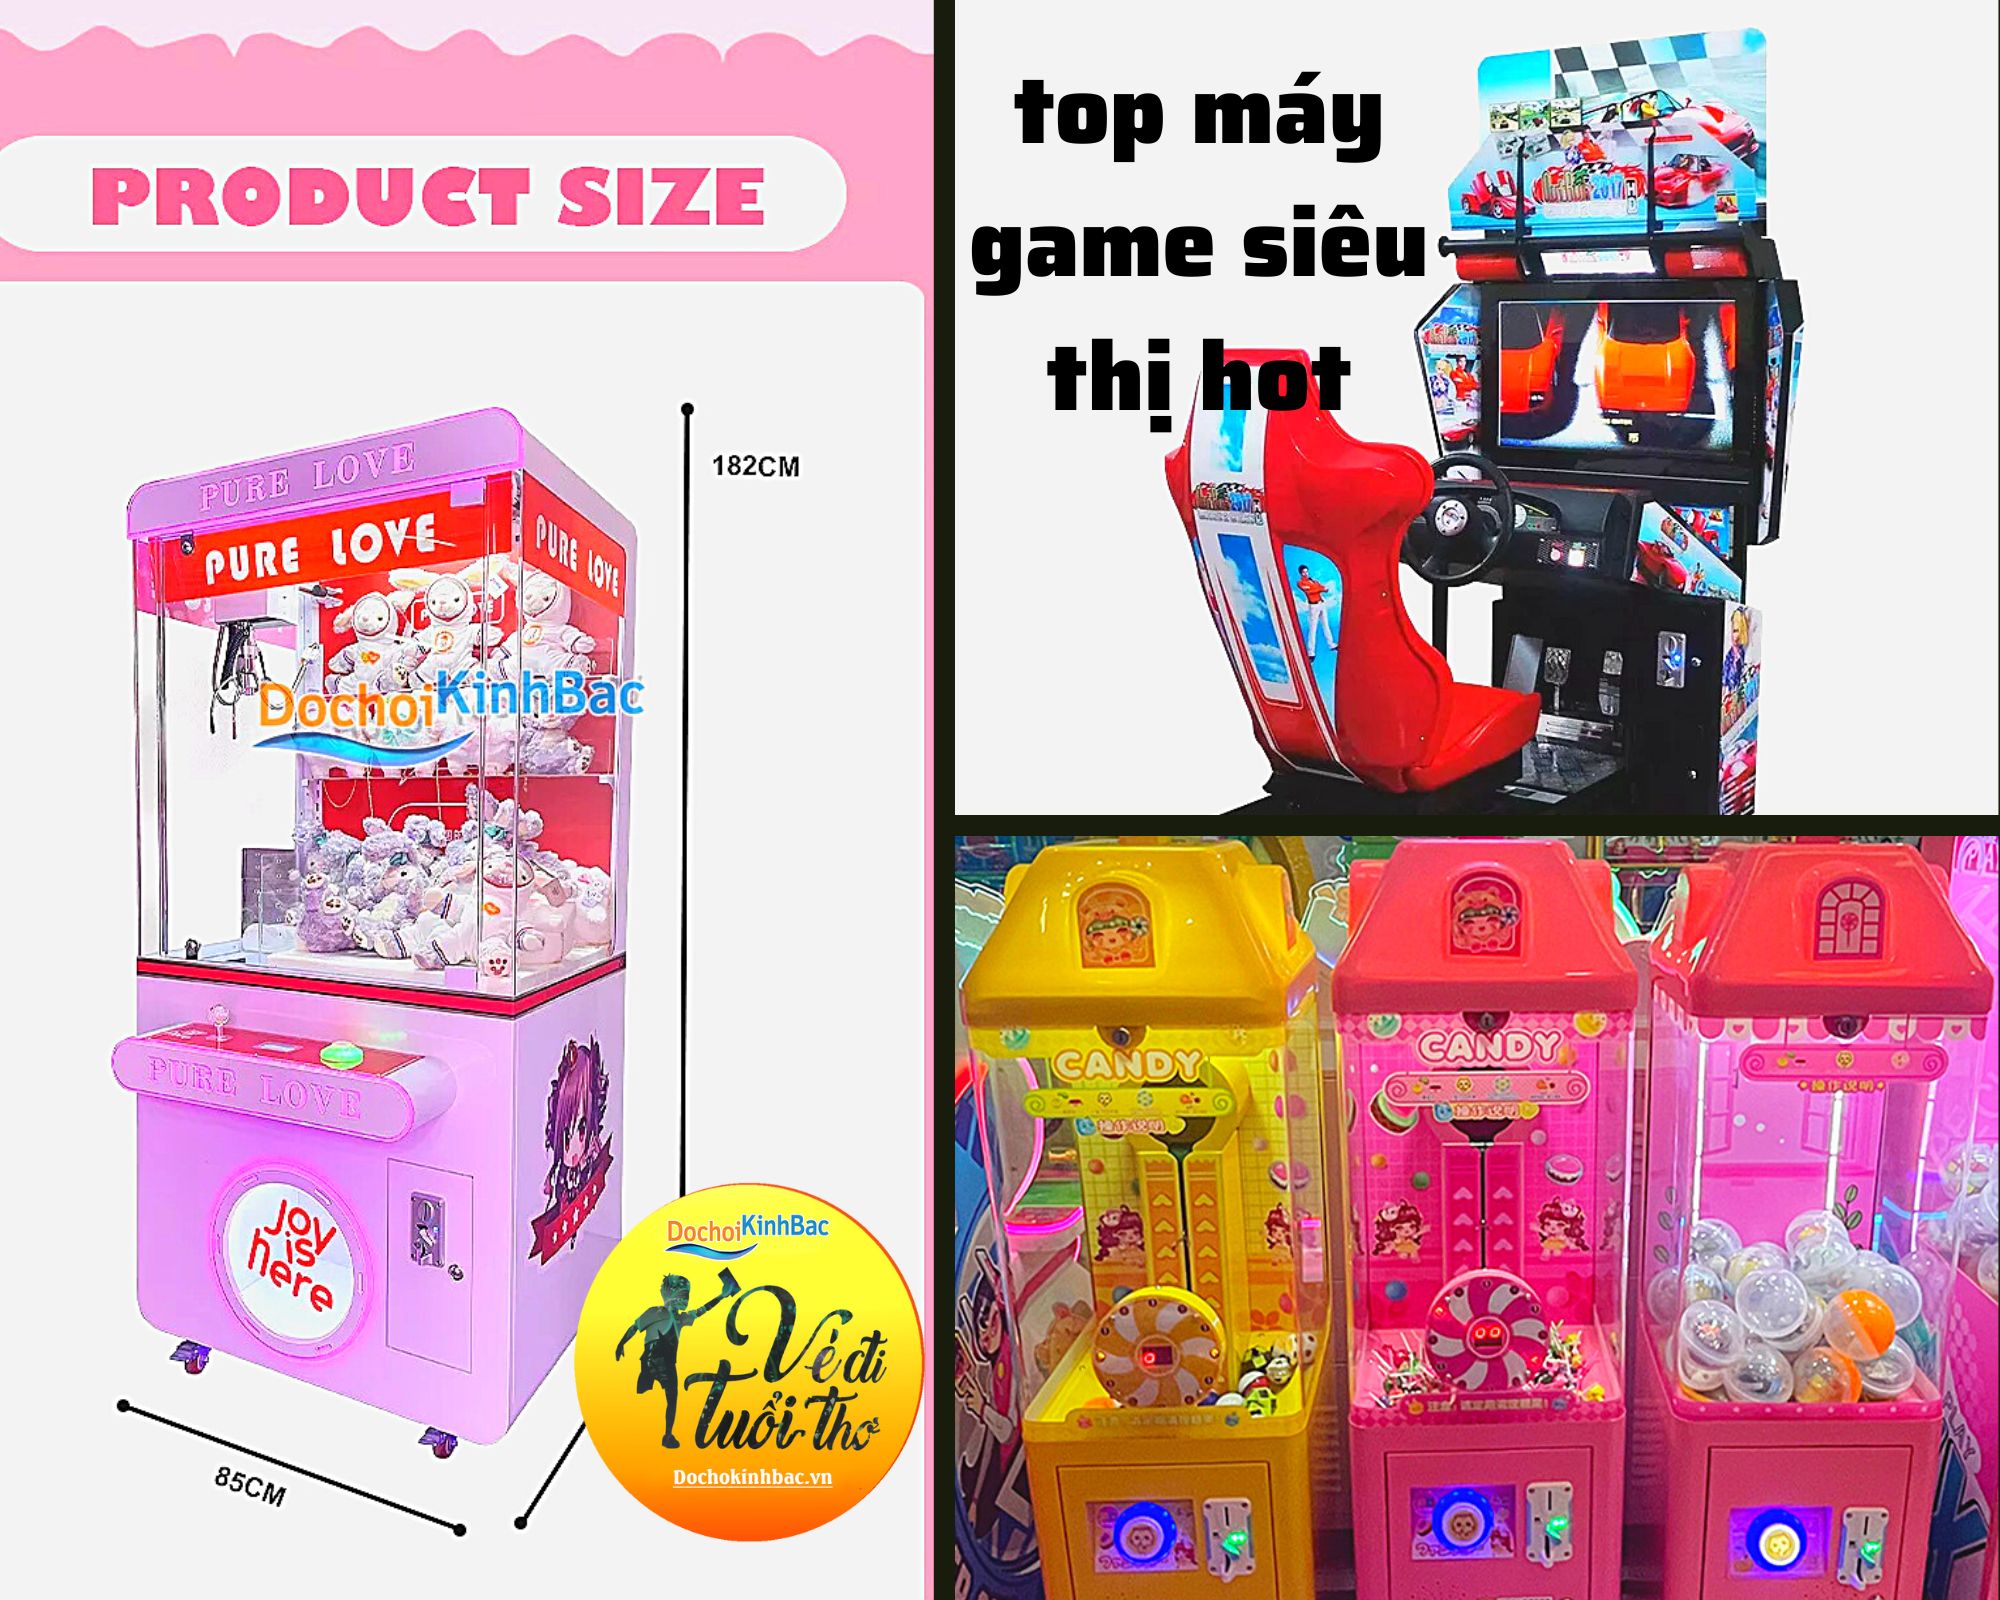 TOP 5 mẫu máy game siêu thị được ưa chuộng nhất tại phường Hà Khánh, TP Hạ Long, Quảng Ninh.